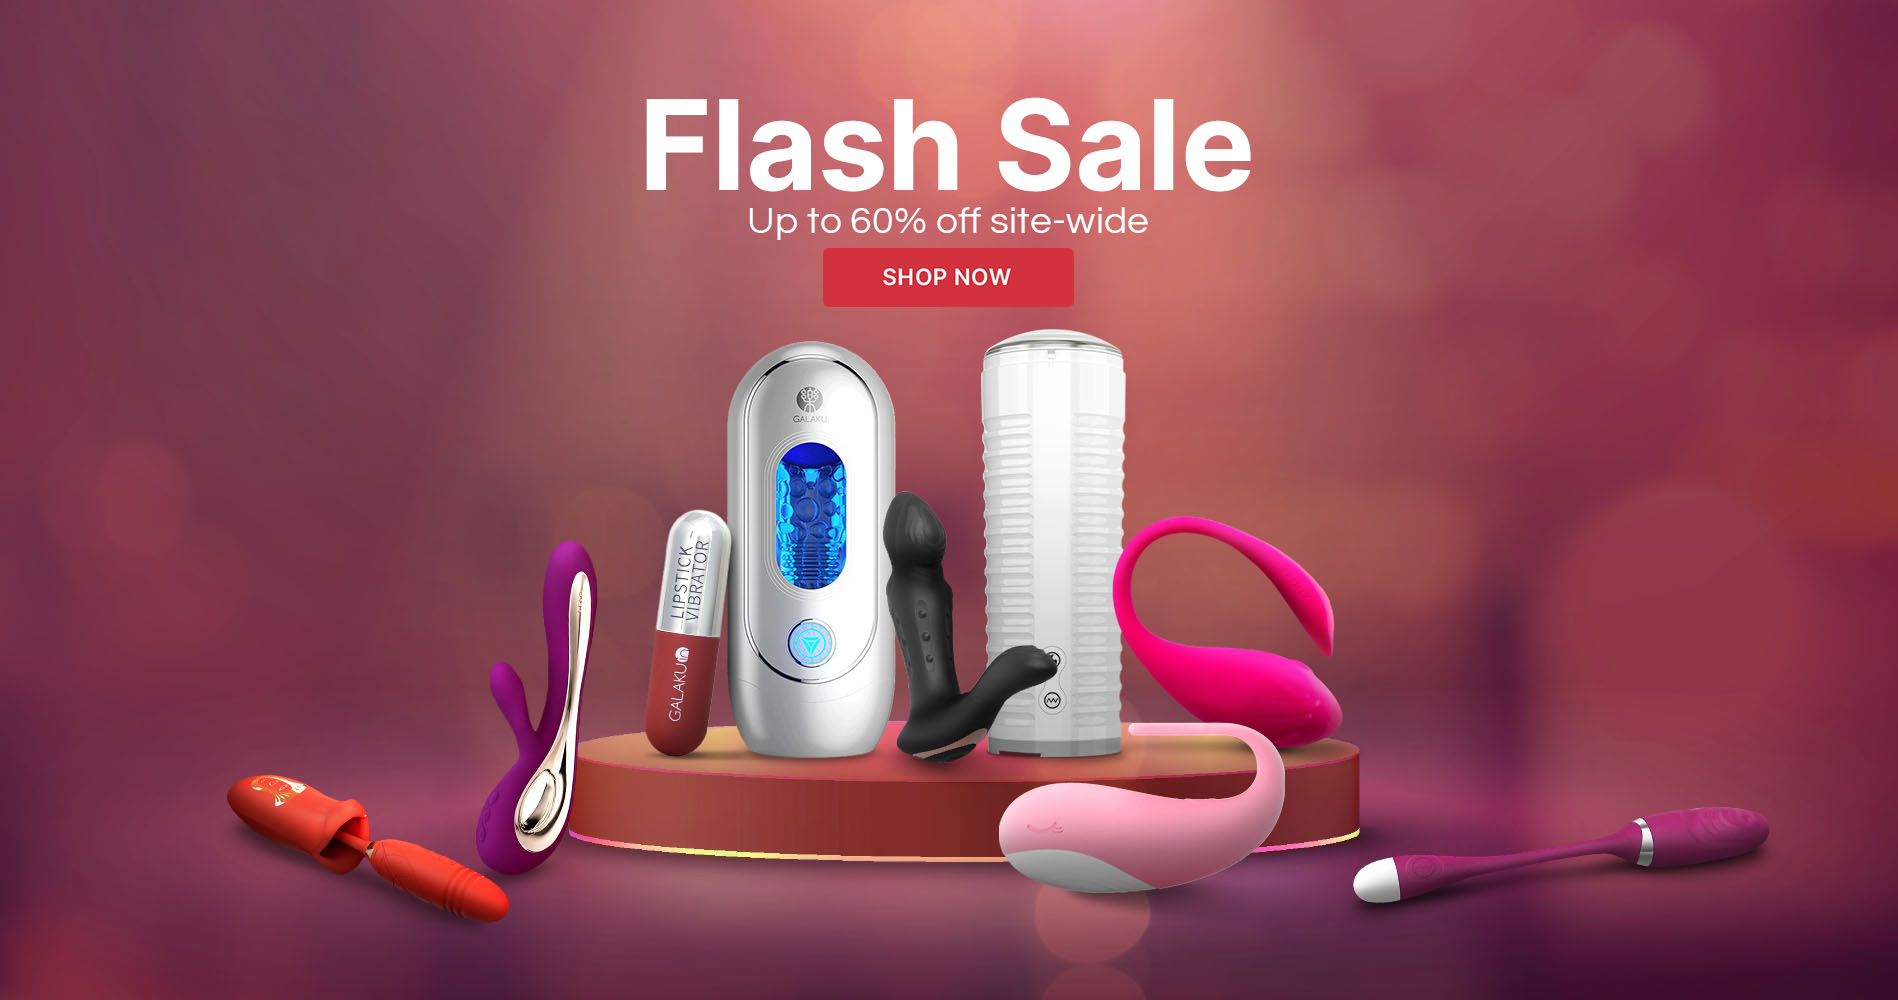 AMZ Flash Sale Promotion